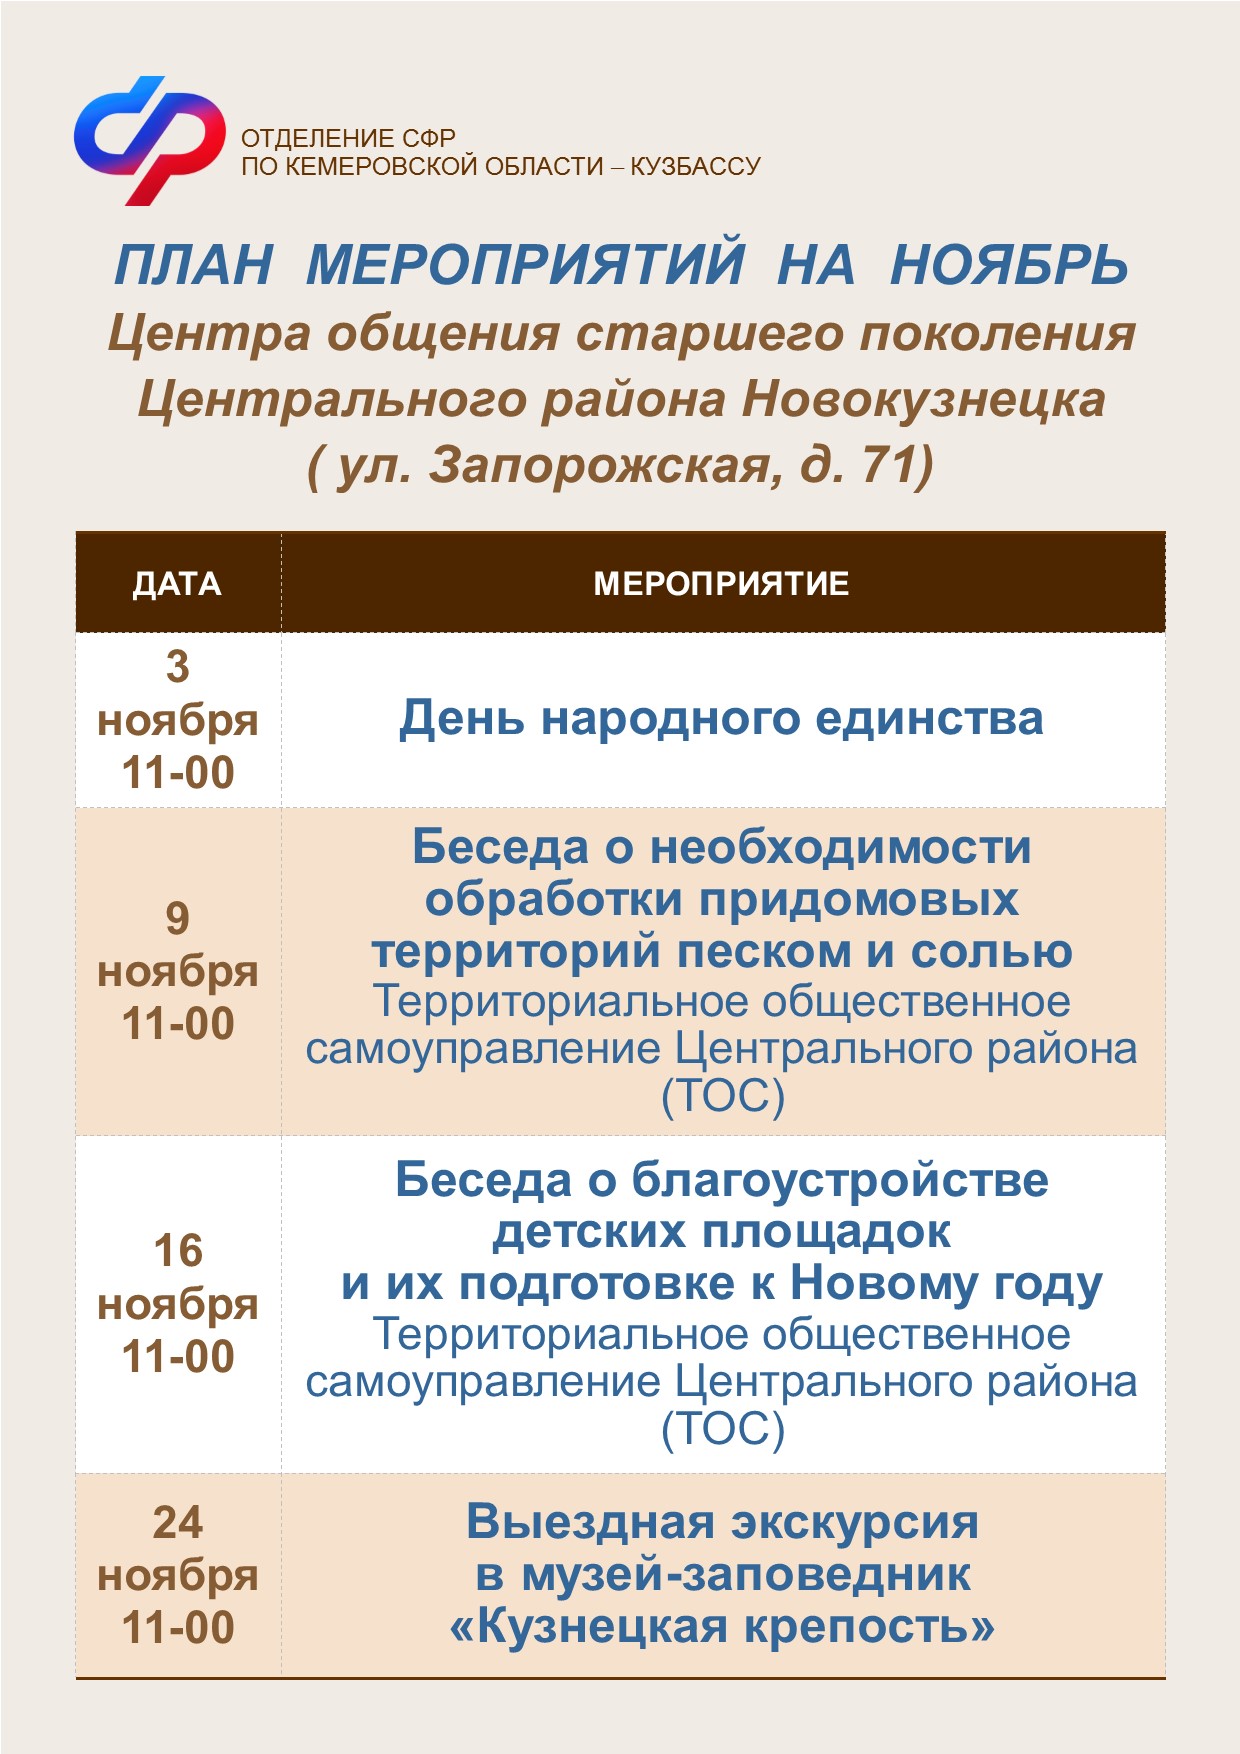 План работы на ноябрь Центра общения старшего поколения Центрального района Новокузнецка